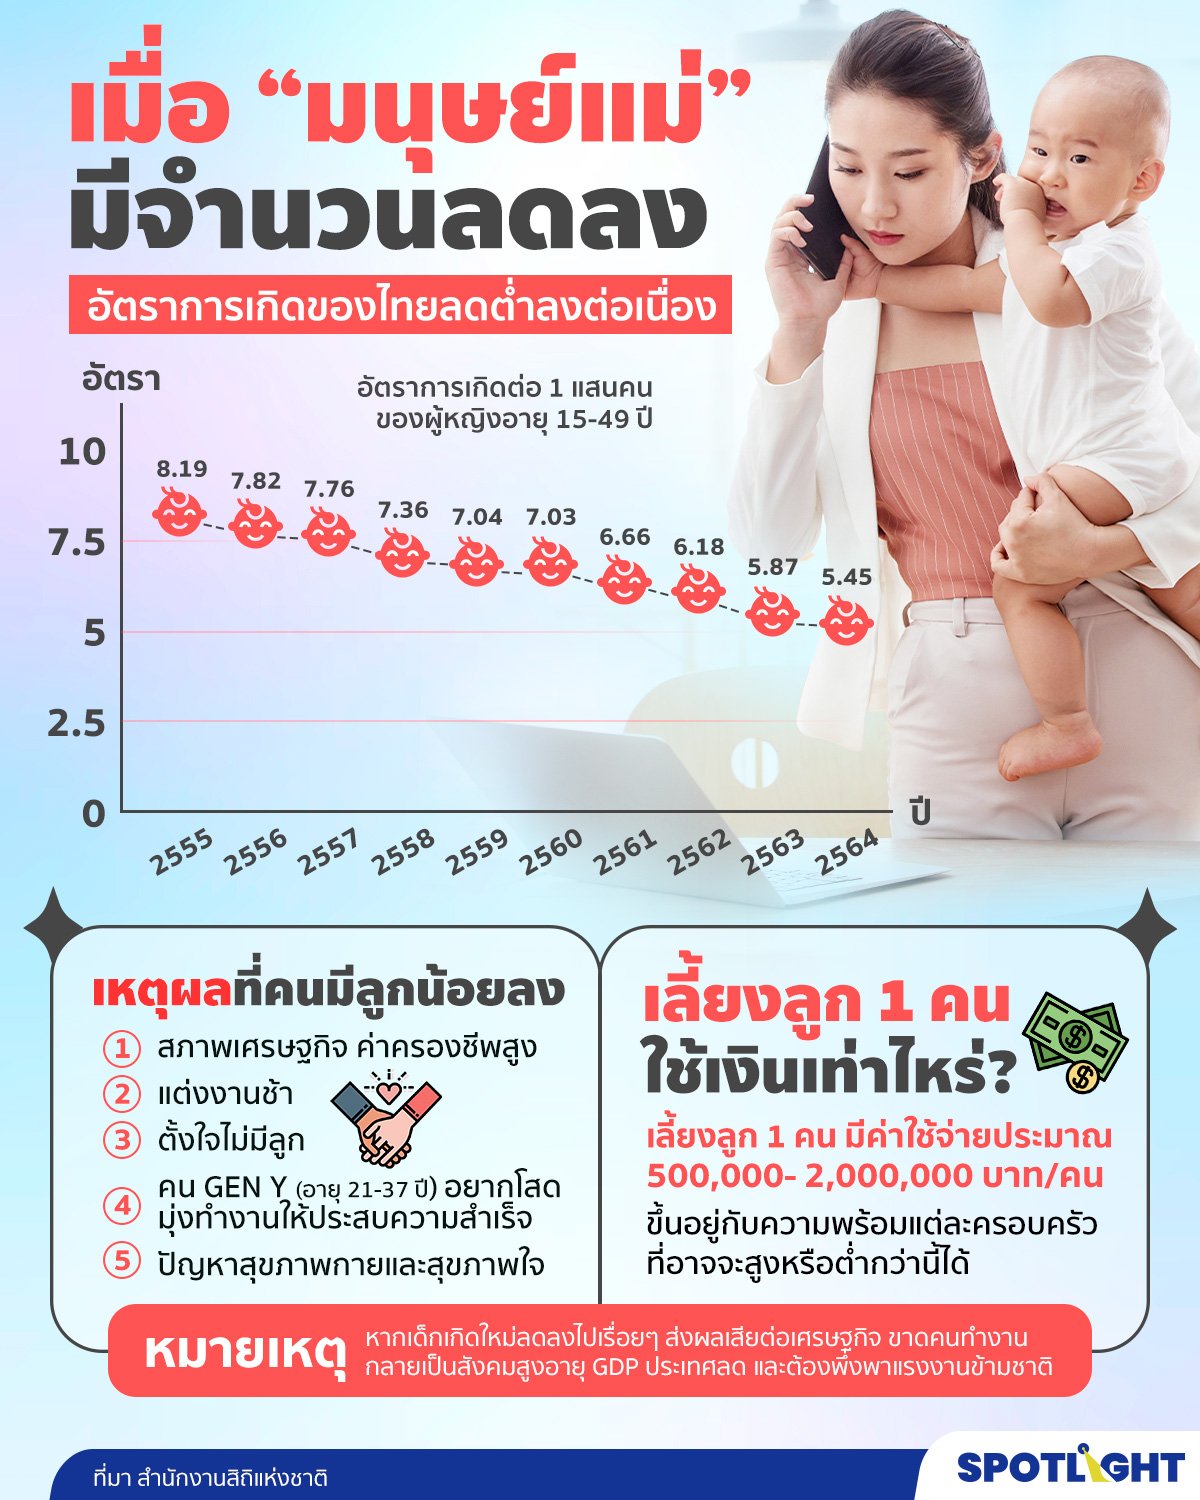 อัตราการเกิดของประชากรไทย